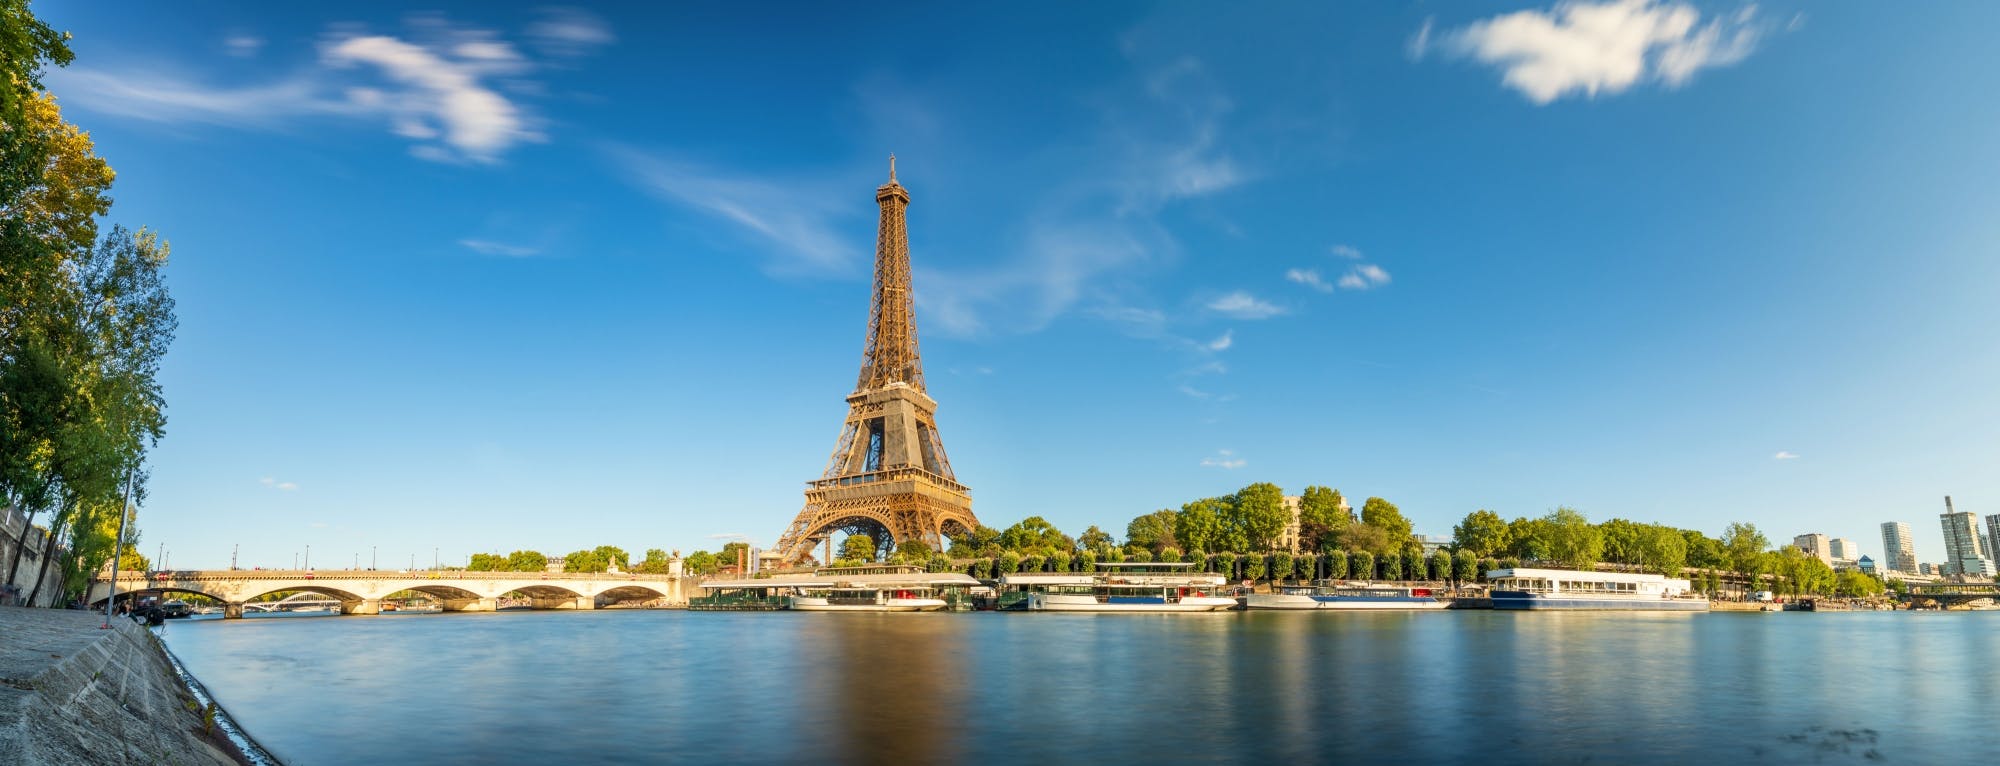 Omvisning i Paris og elvecruise på Seinen